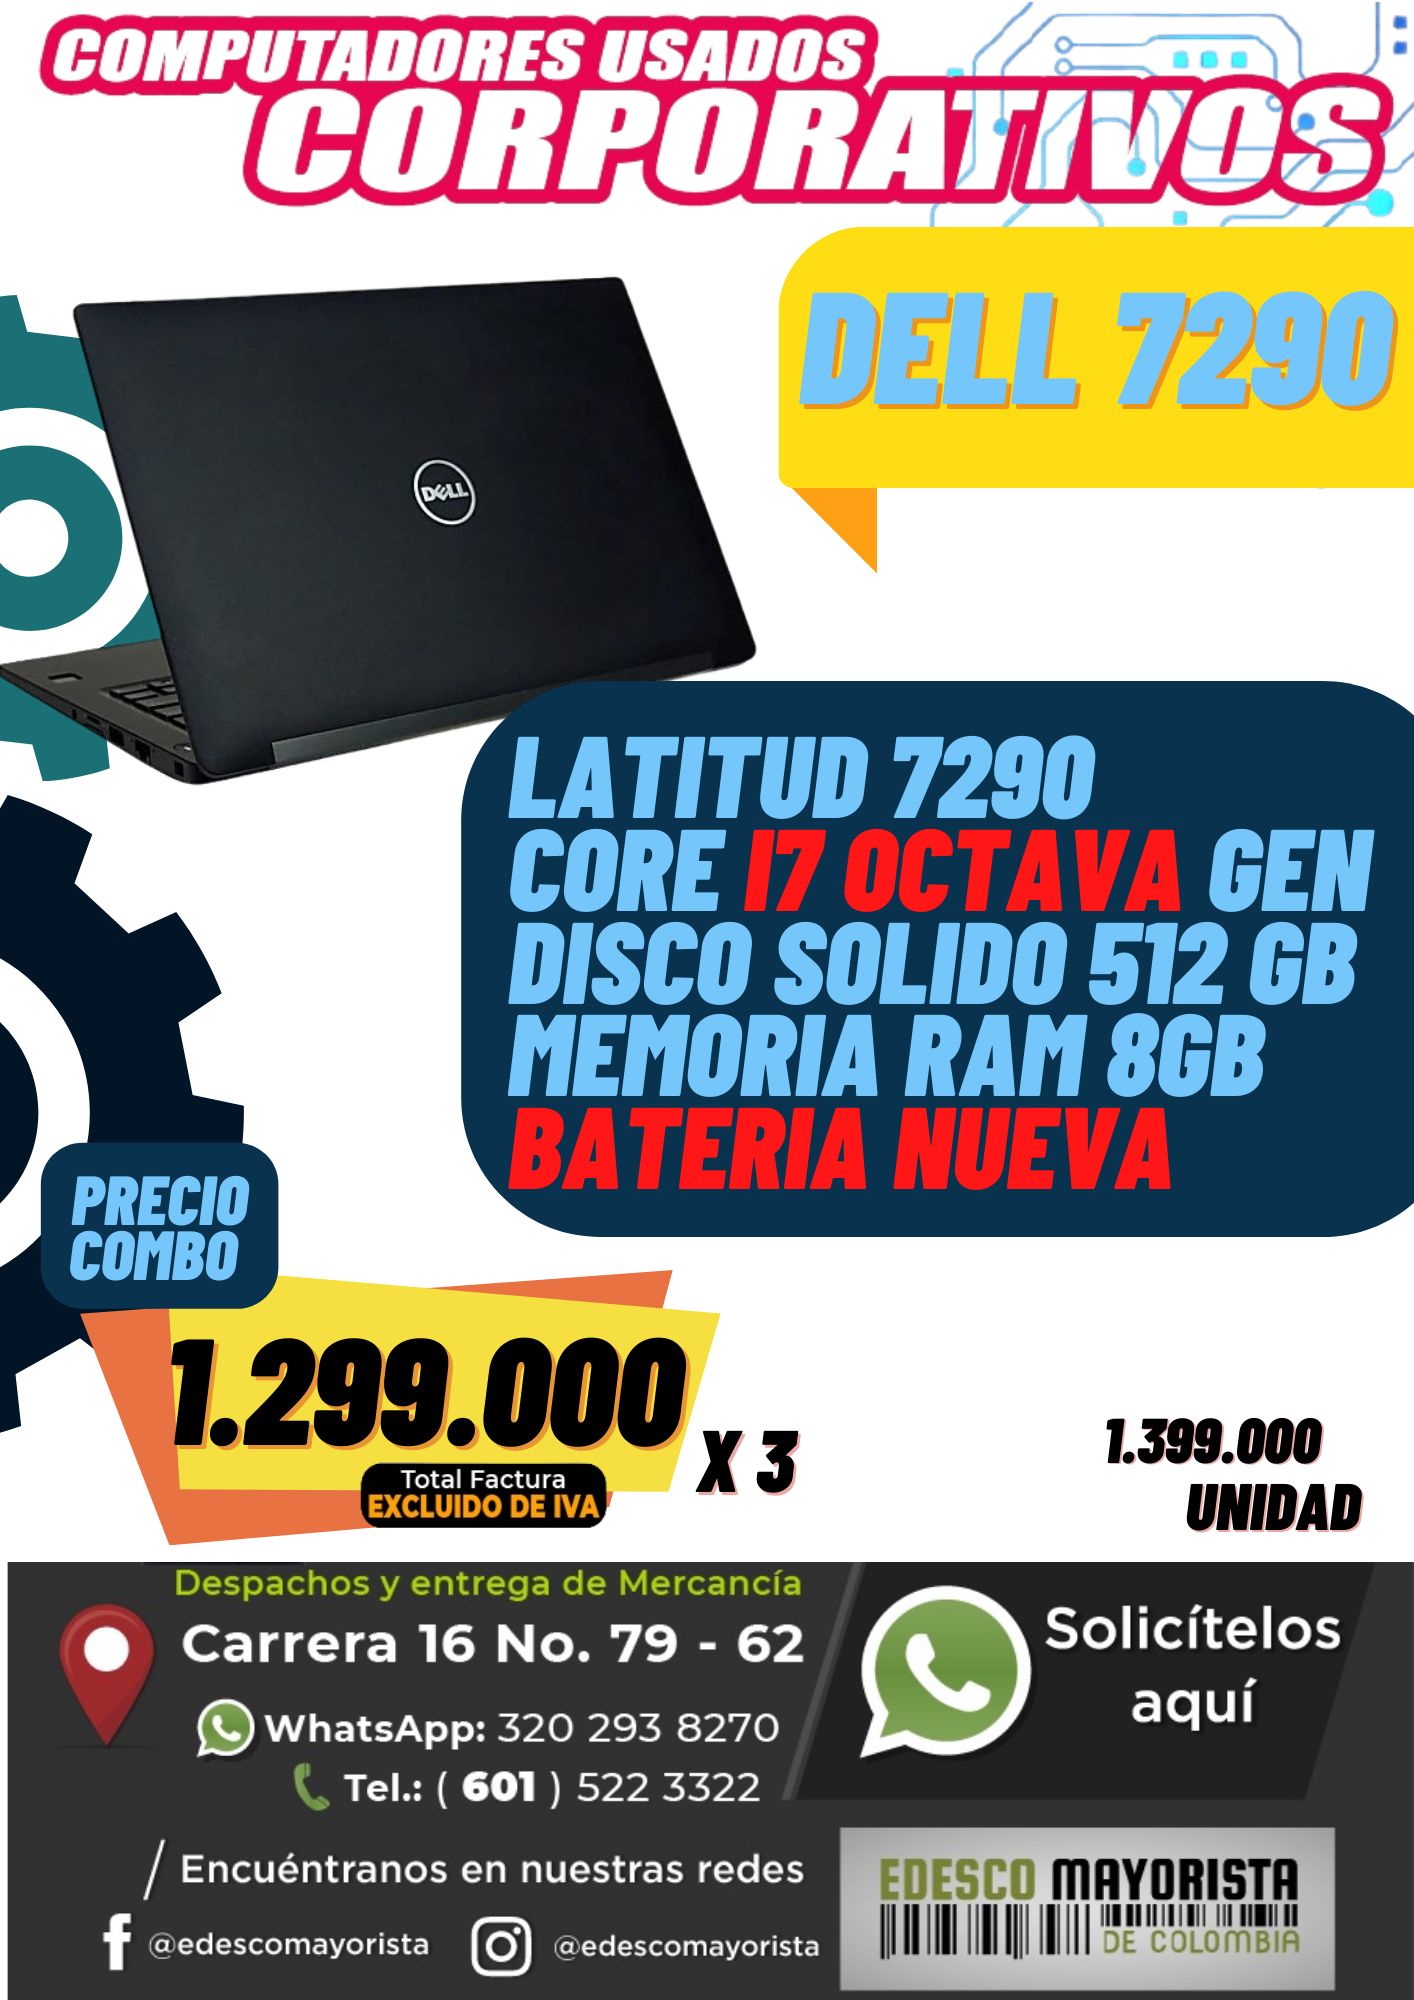 Dell 7290 i7 octava